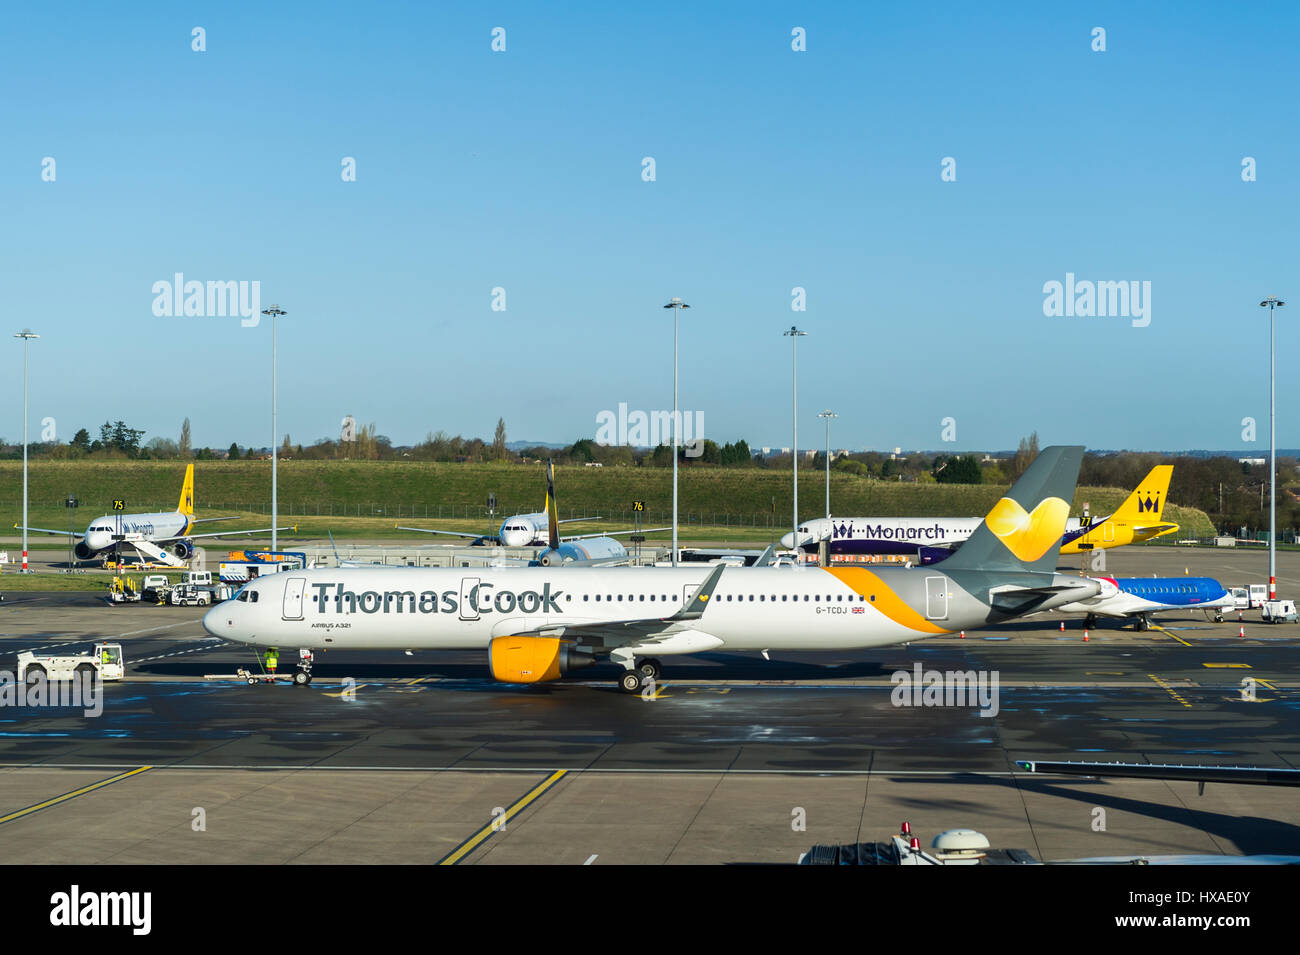 Airbus A321, Registrierung G-TCDJ betrieben von Thomas Cook, bereitet auf den Laufsteg für Take off Taxi am Flughafen Birmingham, Vereinigtes Königreich. Stockfoto